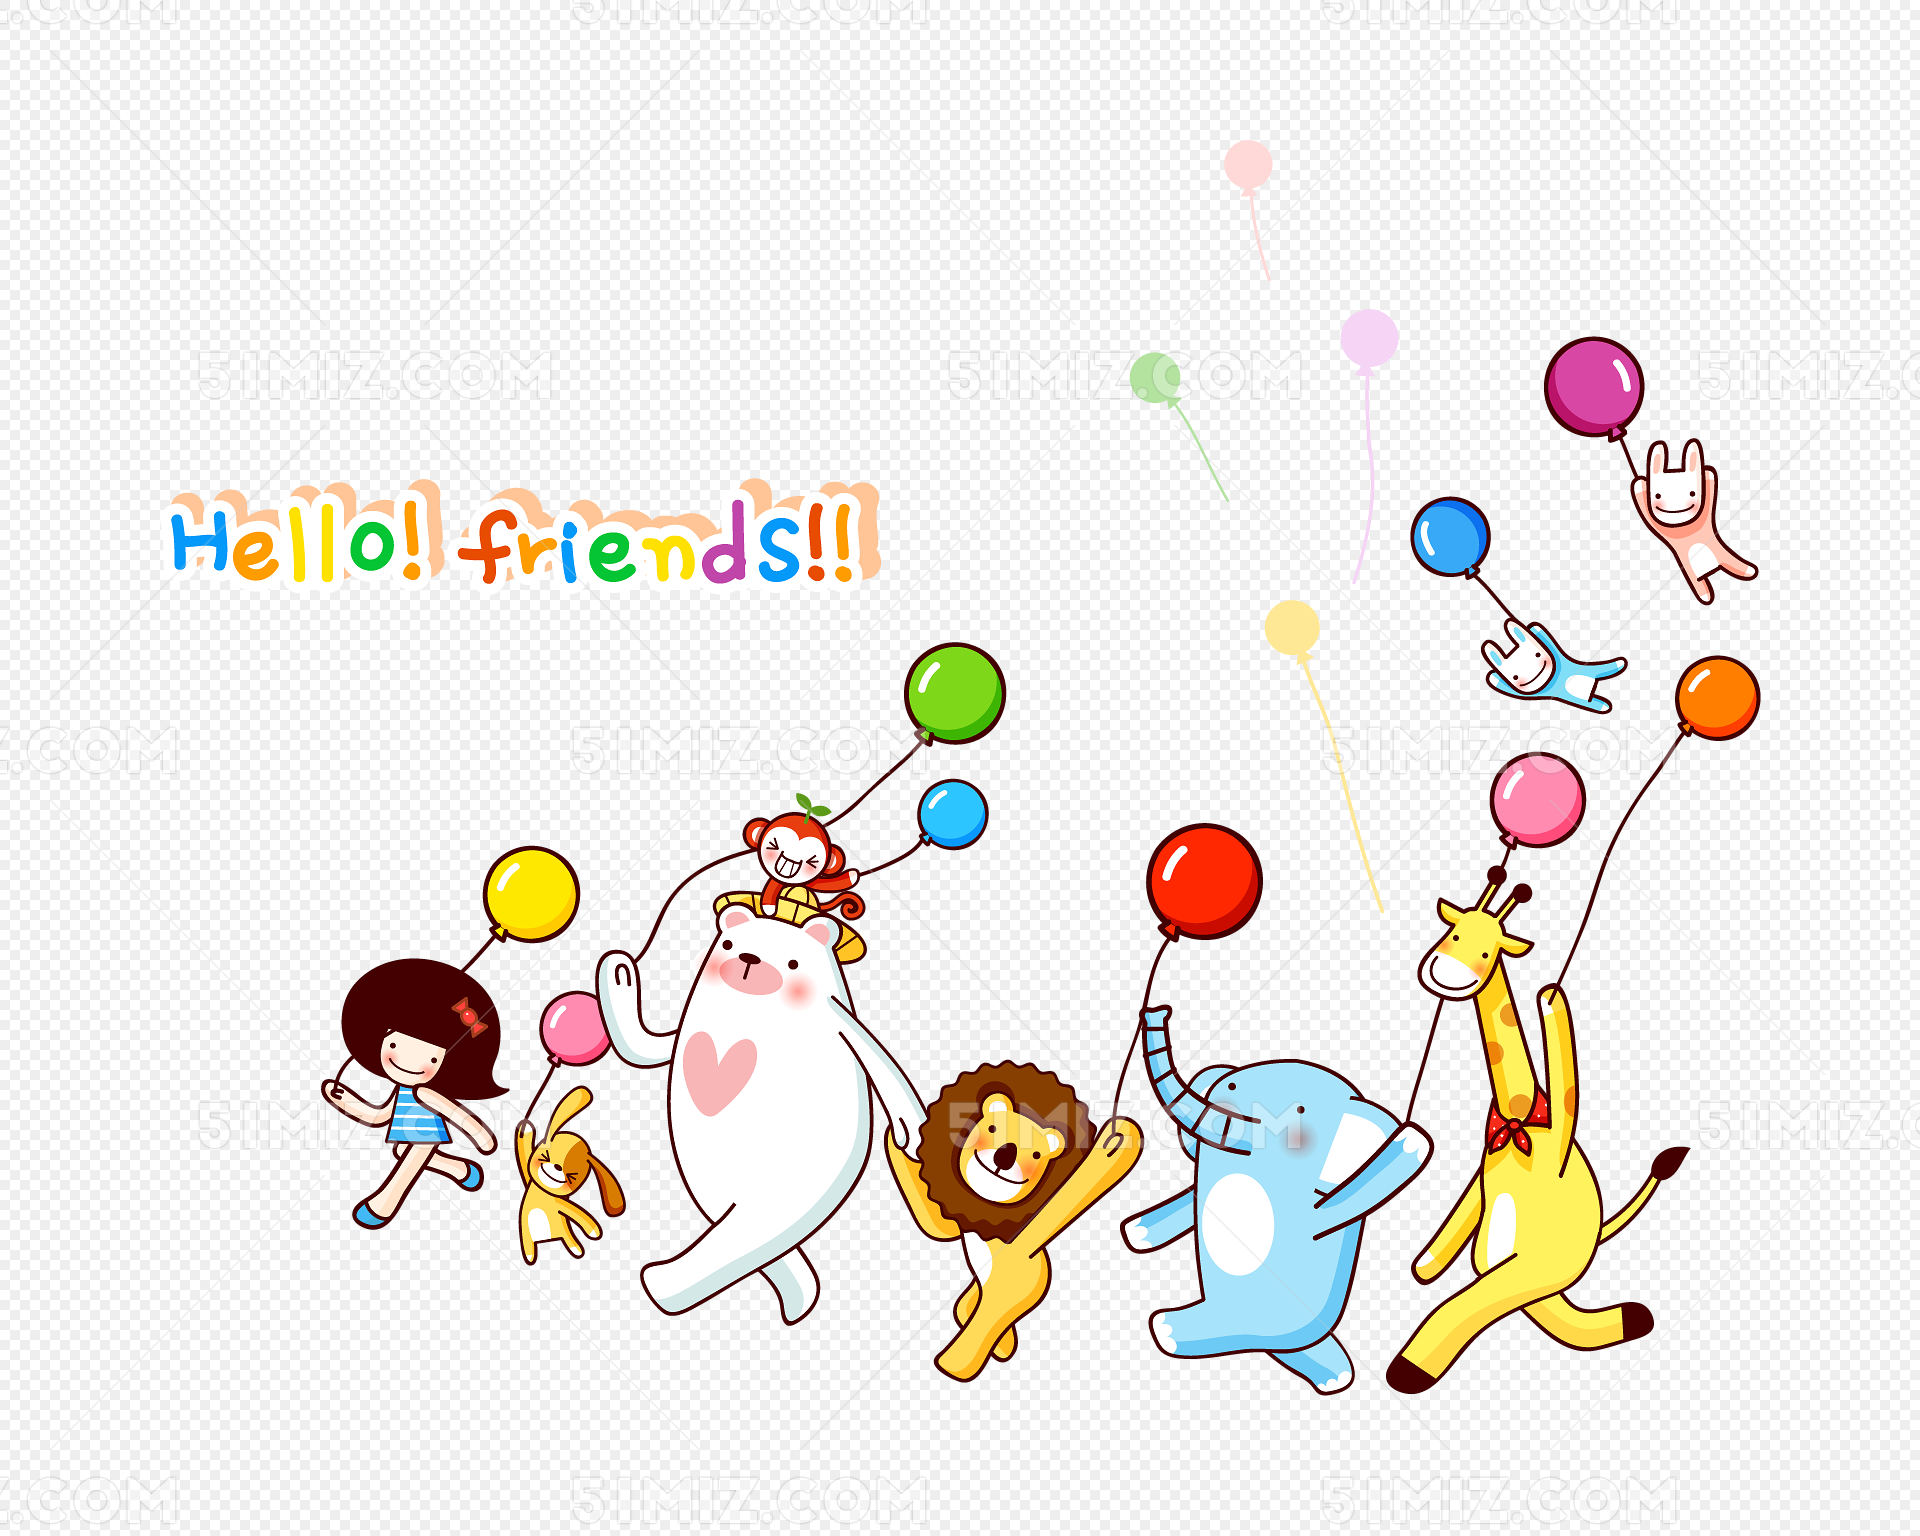 动物气球 派对装饰 大象 老虎 中号动物头气球 动物气球-阿里巴巴